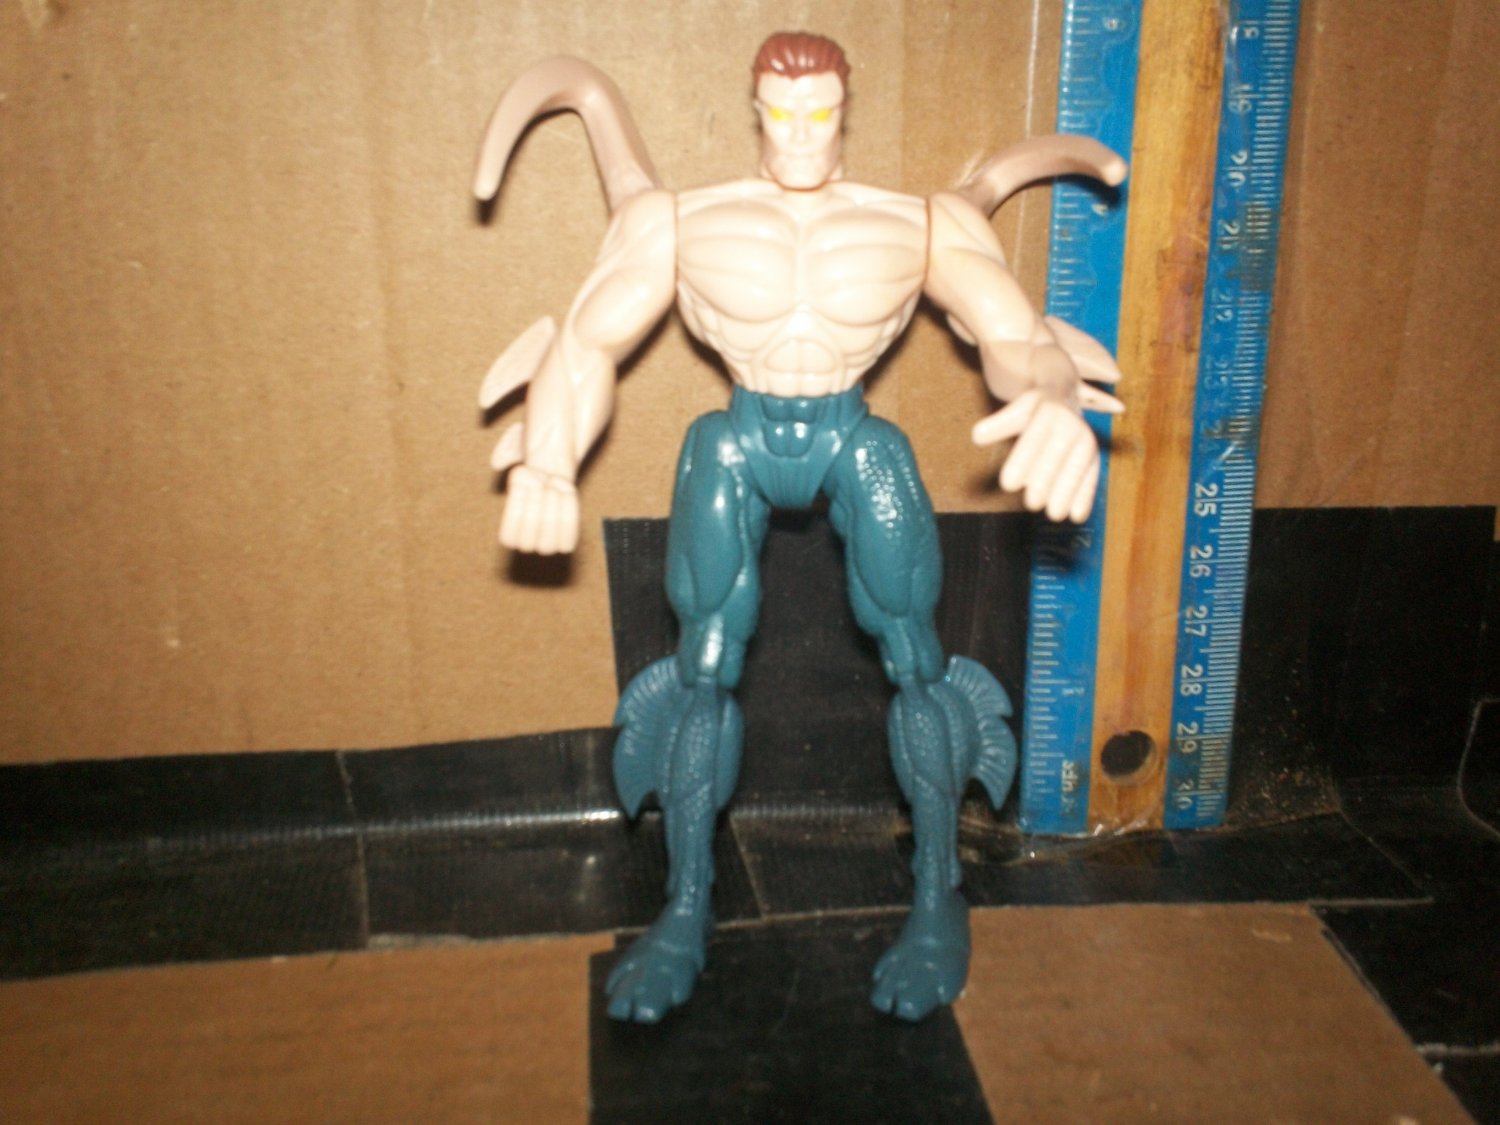 1994 Smythe marvel figure